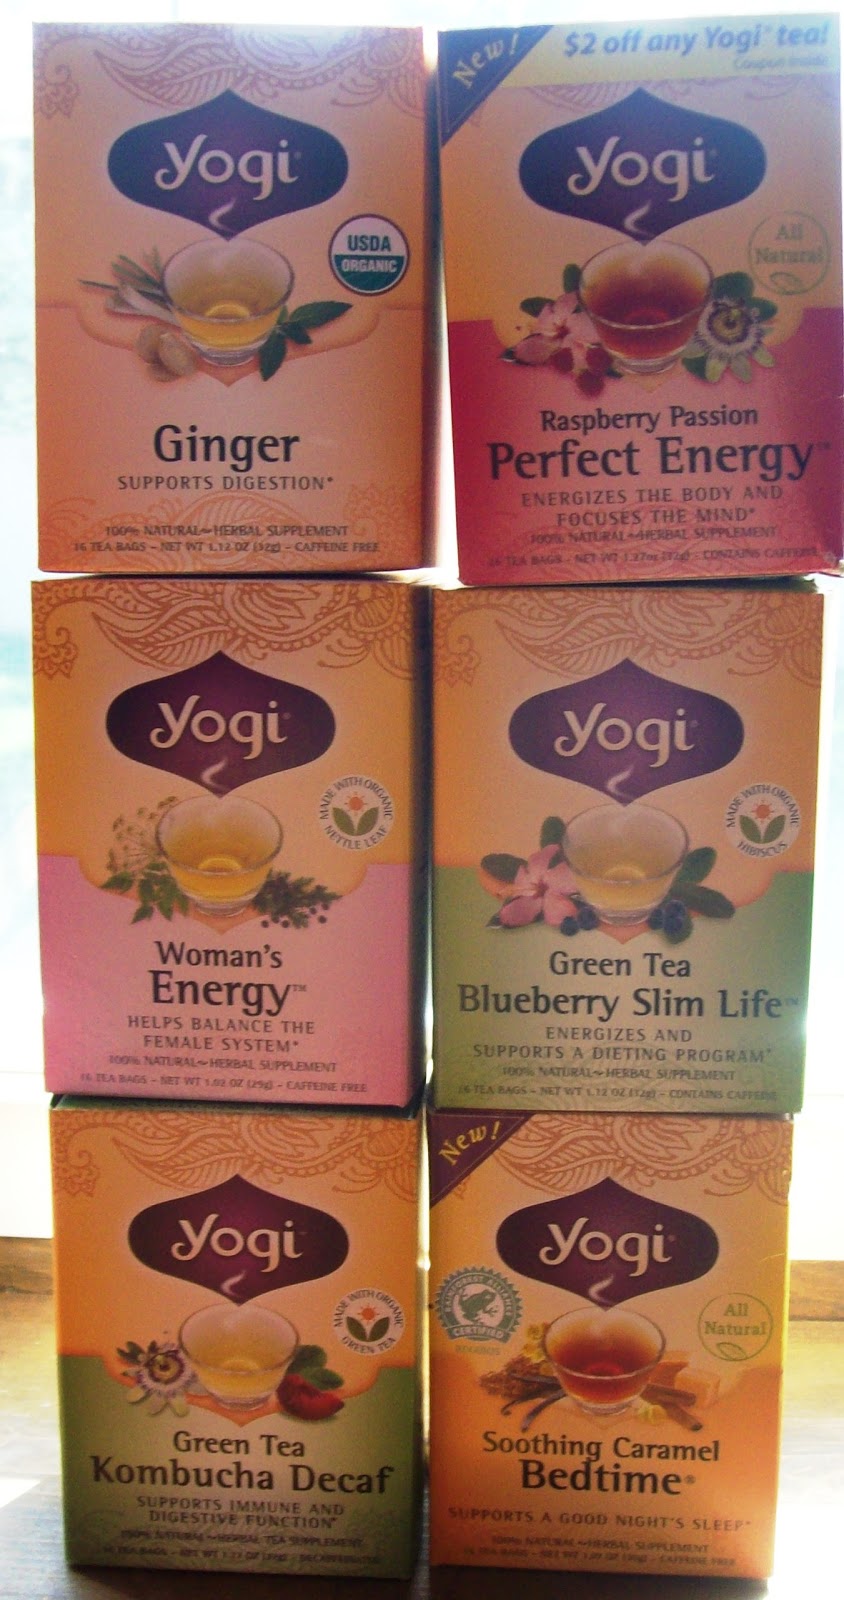 Yogi Tea Green Tea Kombucha 16 Tea Bags